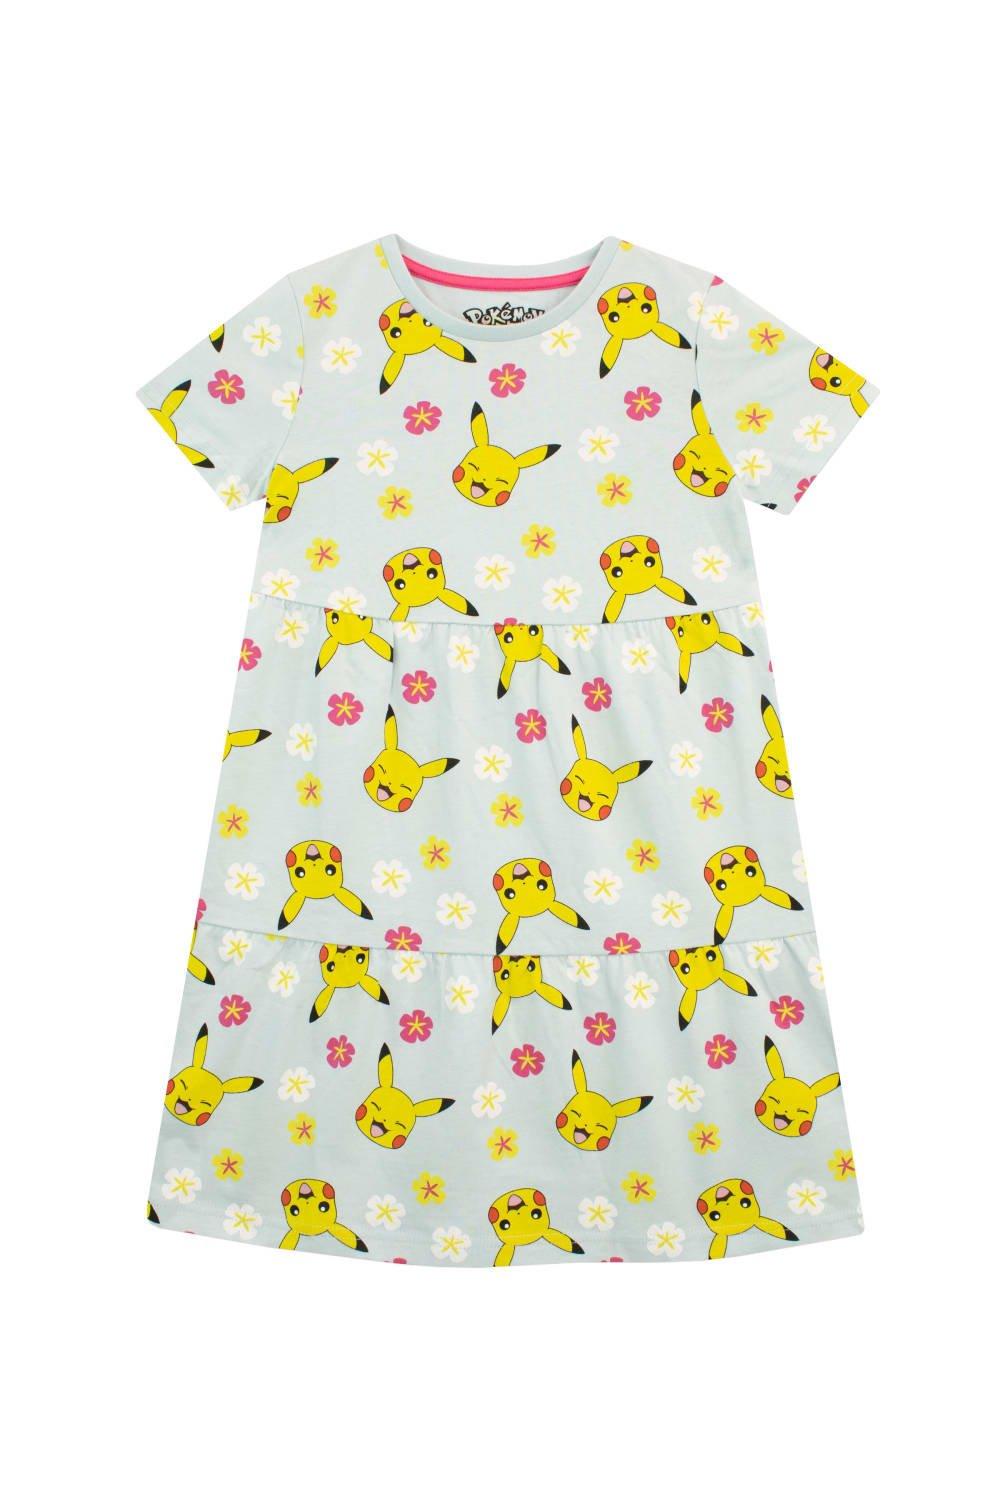 Pikachu Floral Print Dress